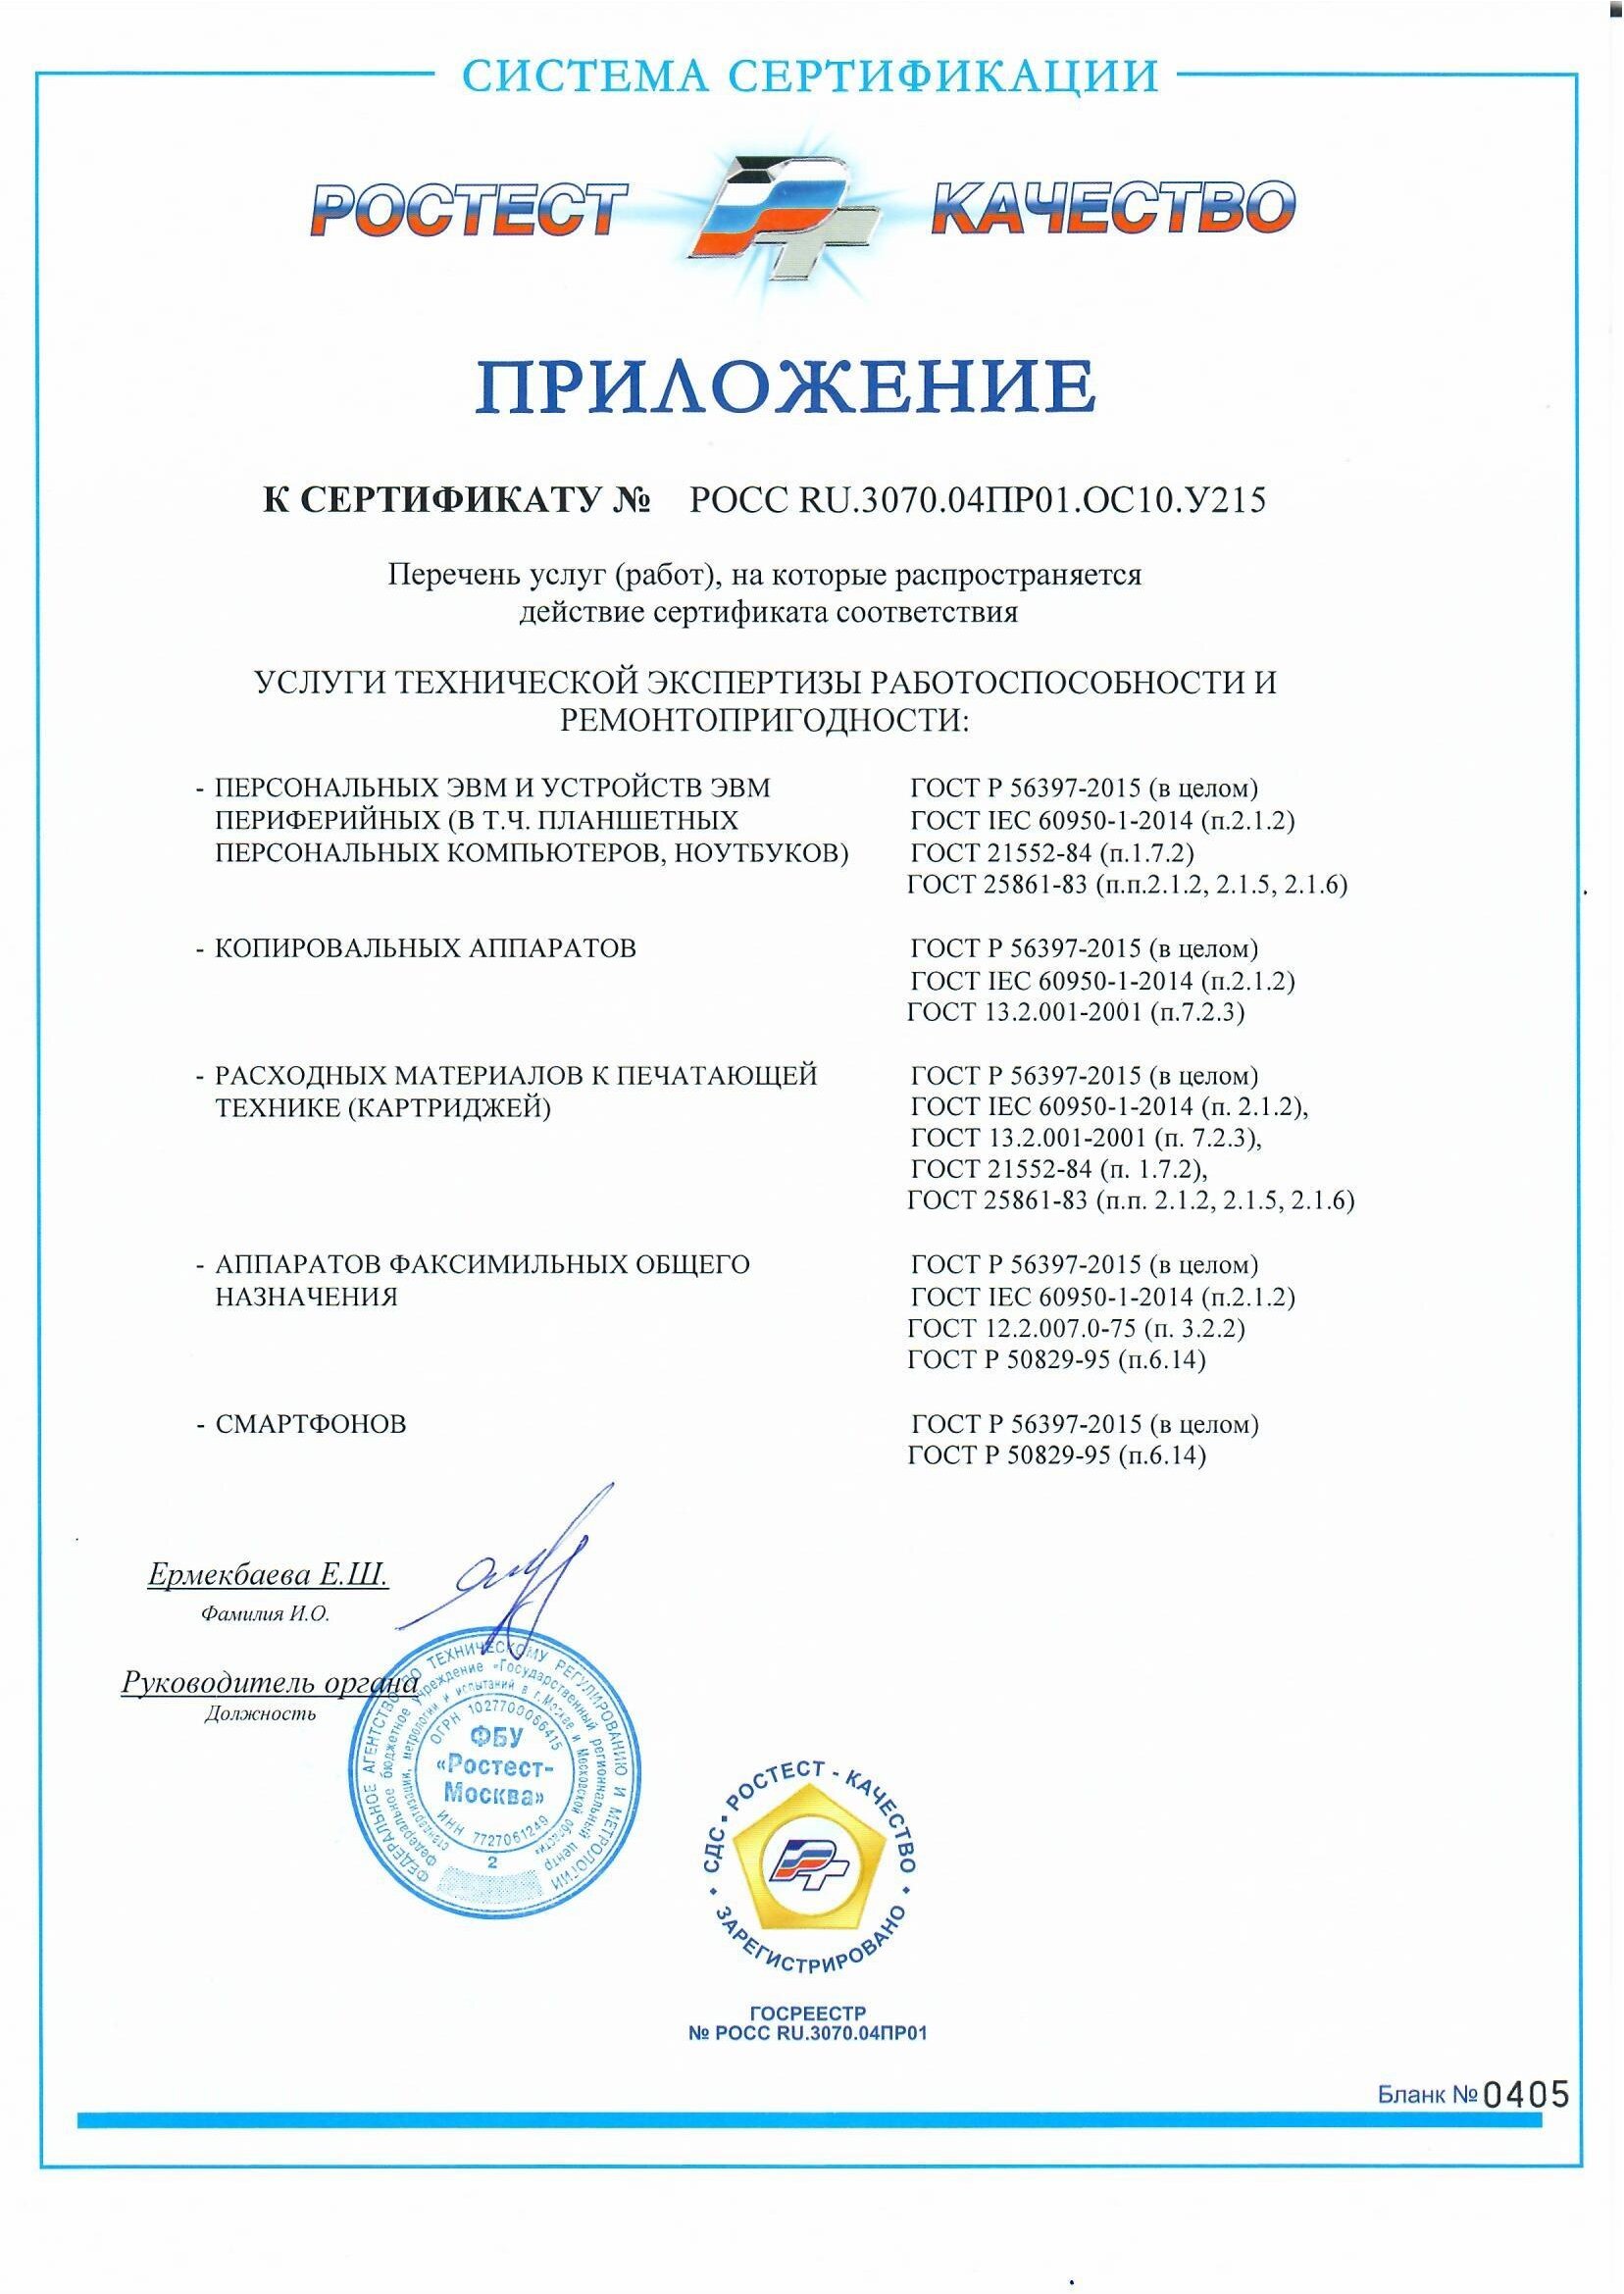 сертификаты дельта копирс (1)